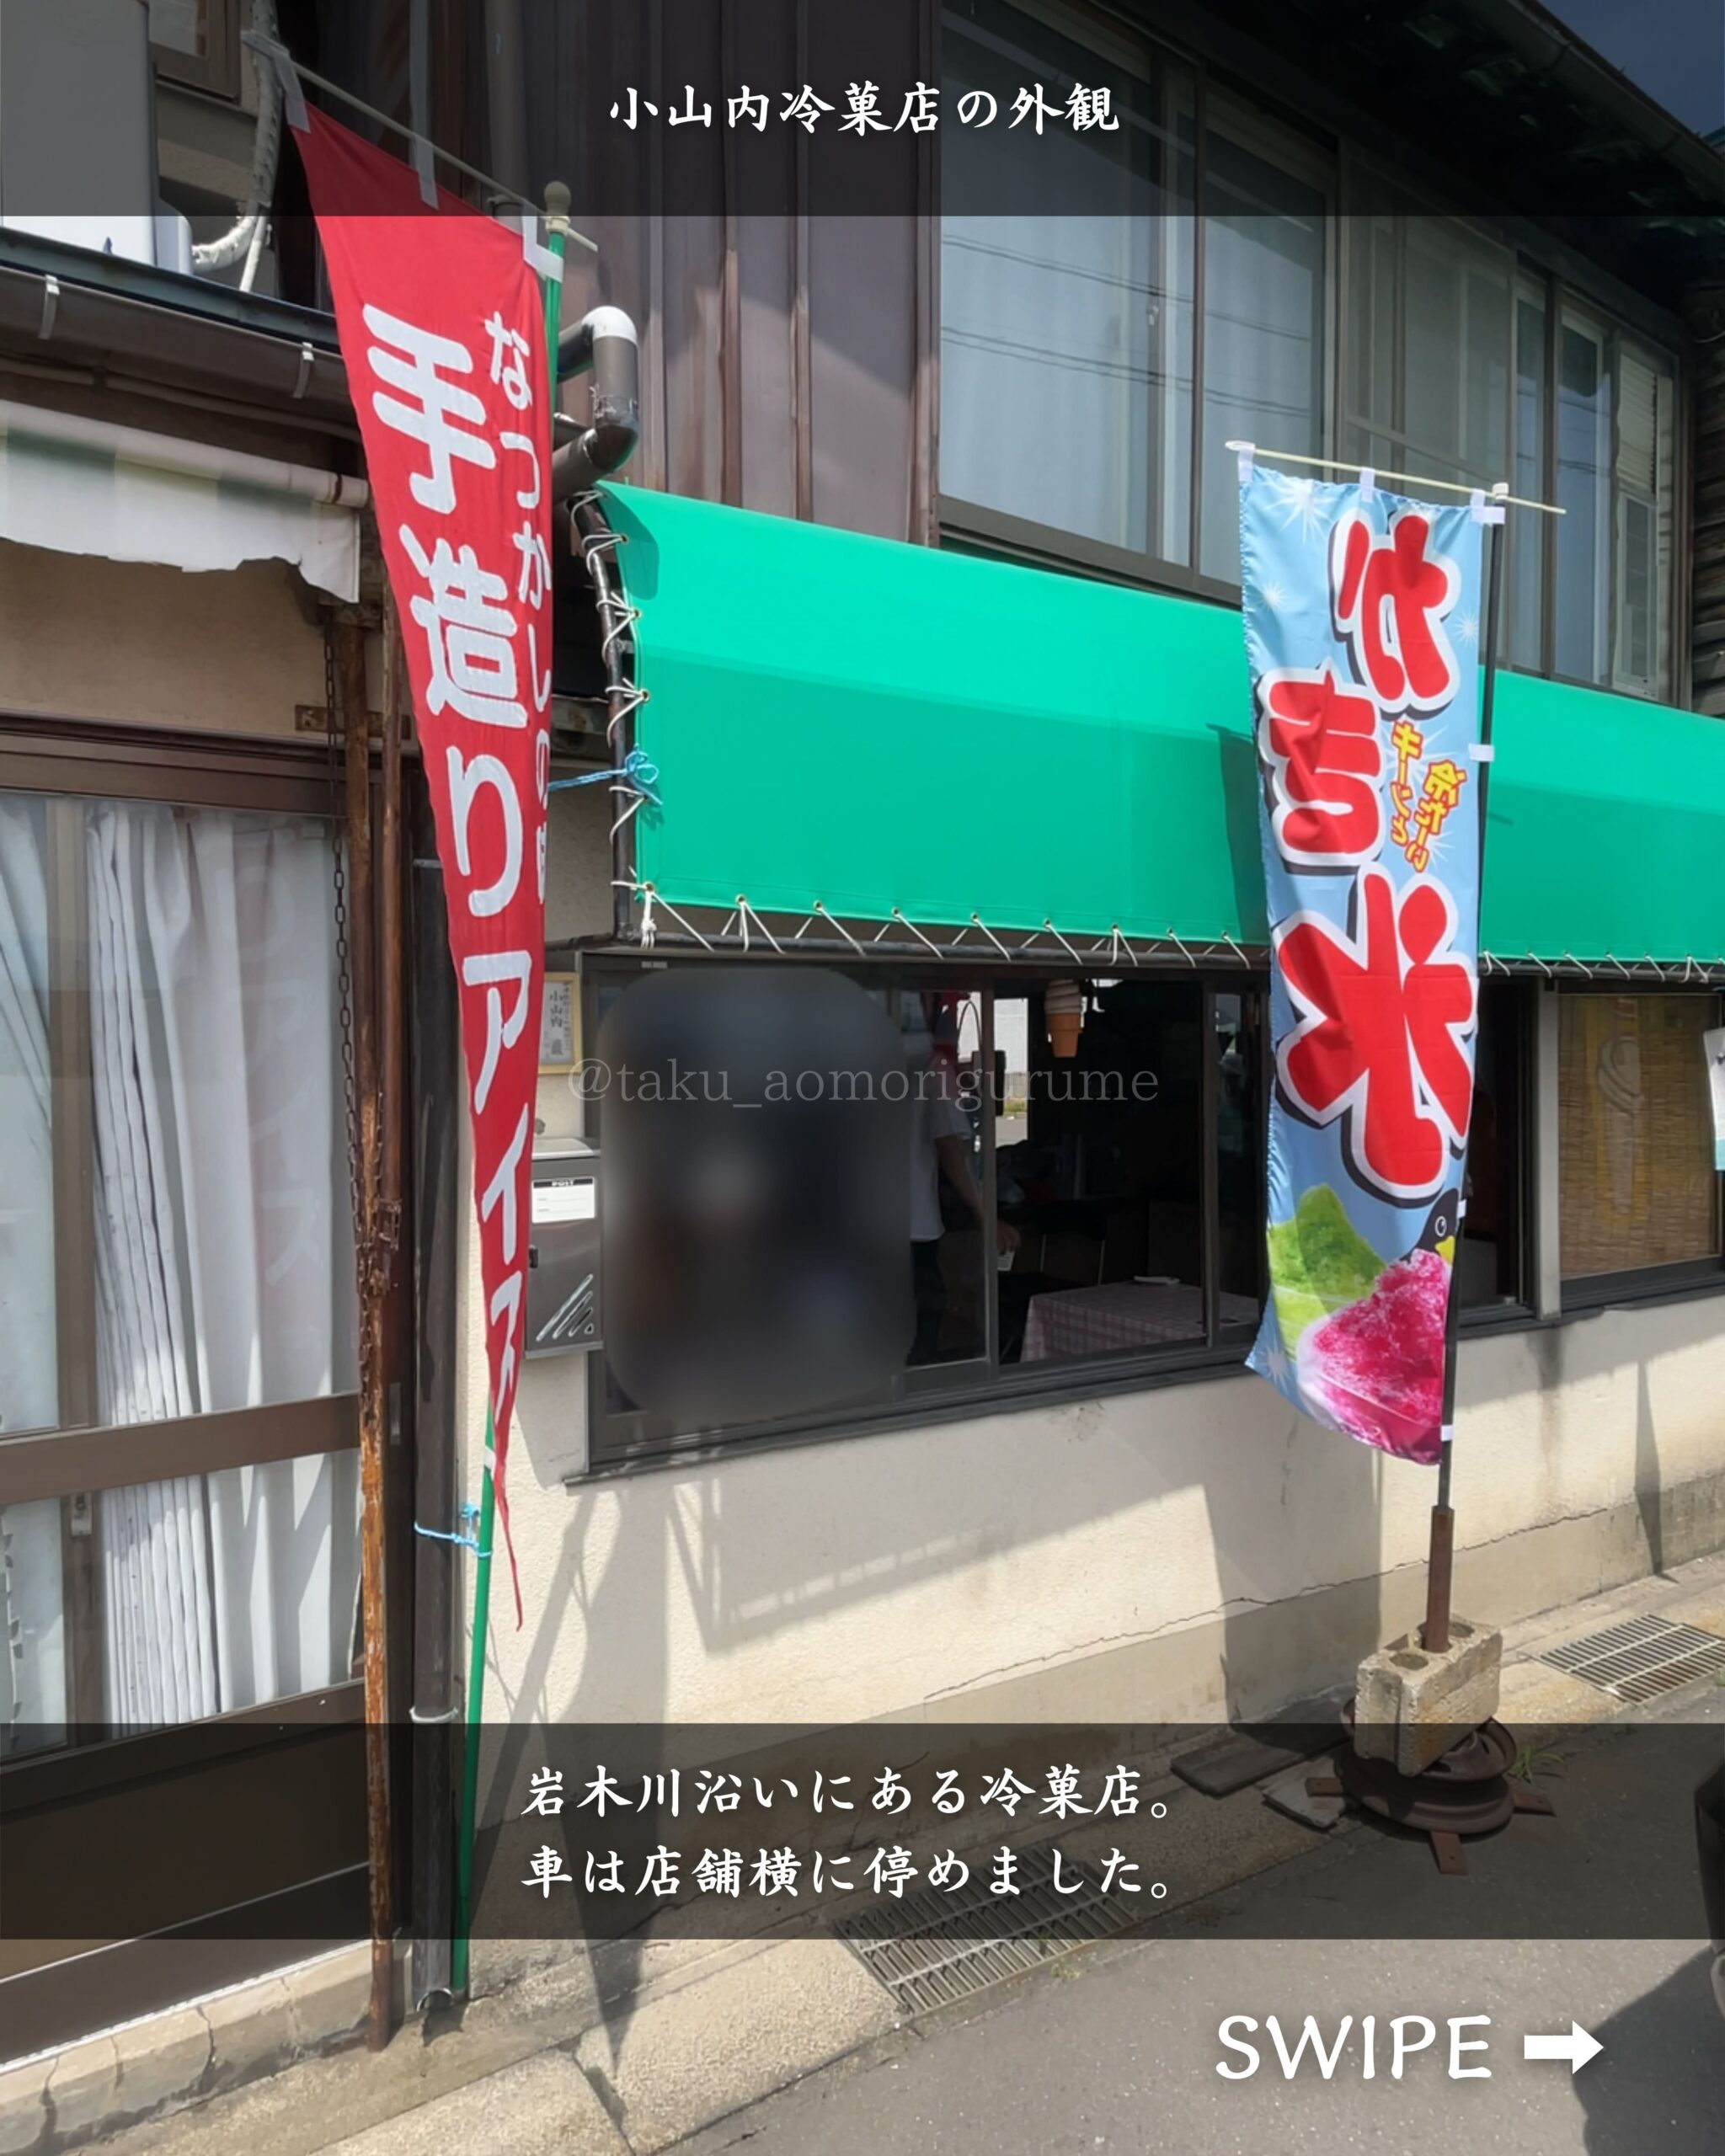 青森県弘前市にある「小山内冷菓店」の「外観」